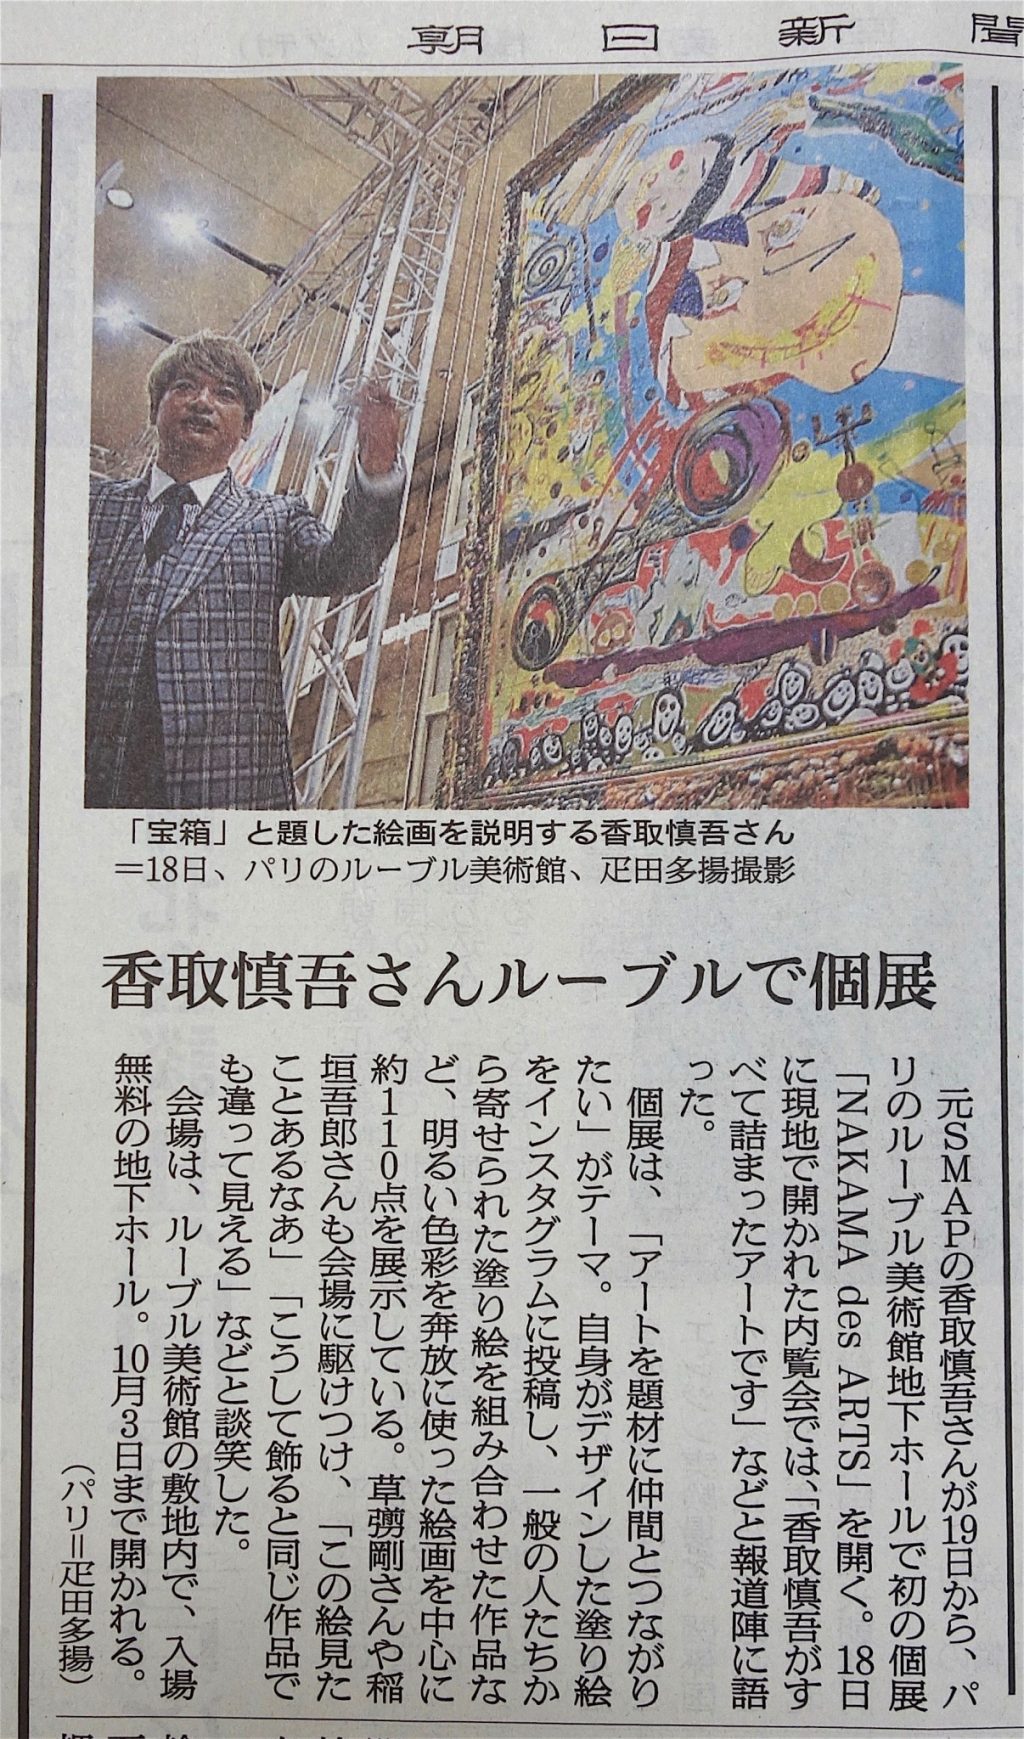 今日の朝日新聞夕刊、香取慎吾の個展